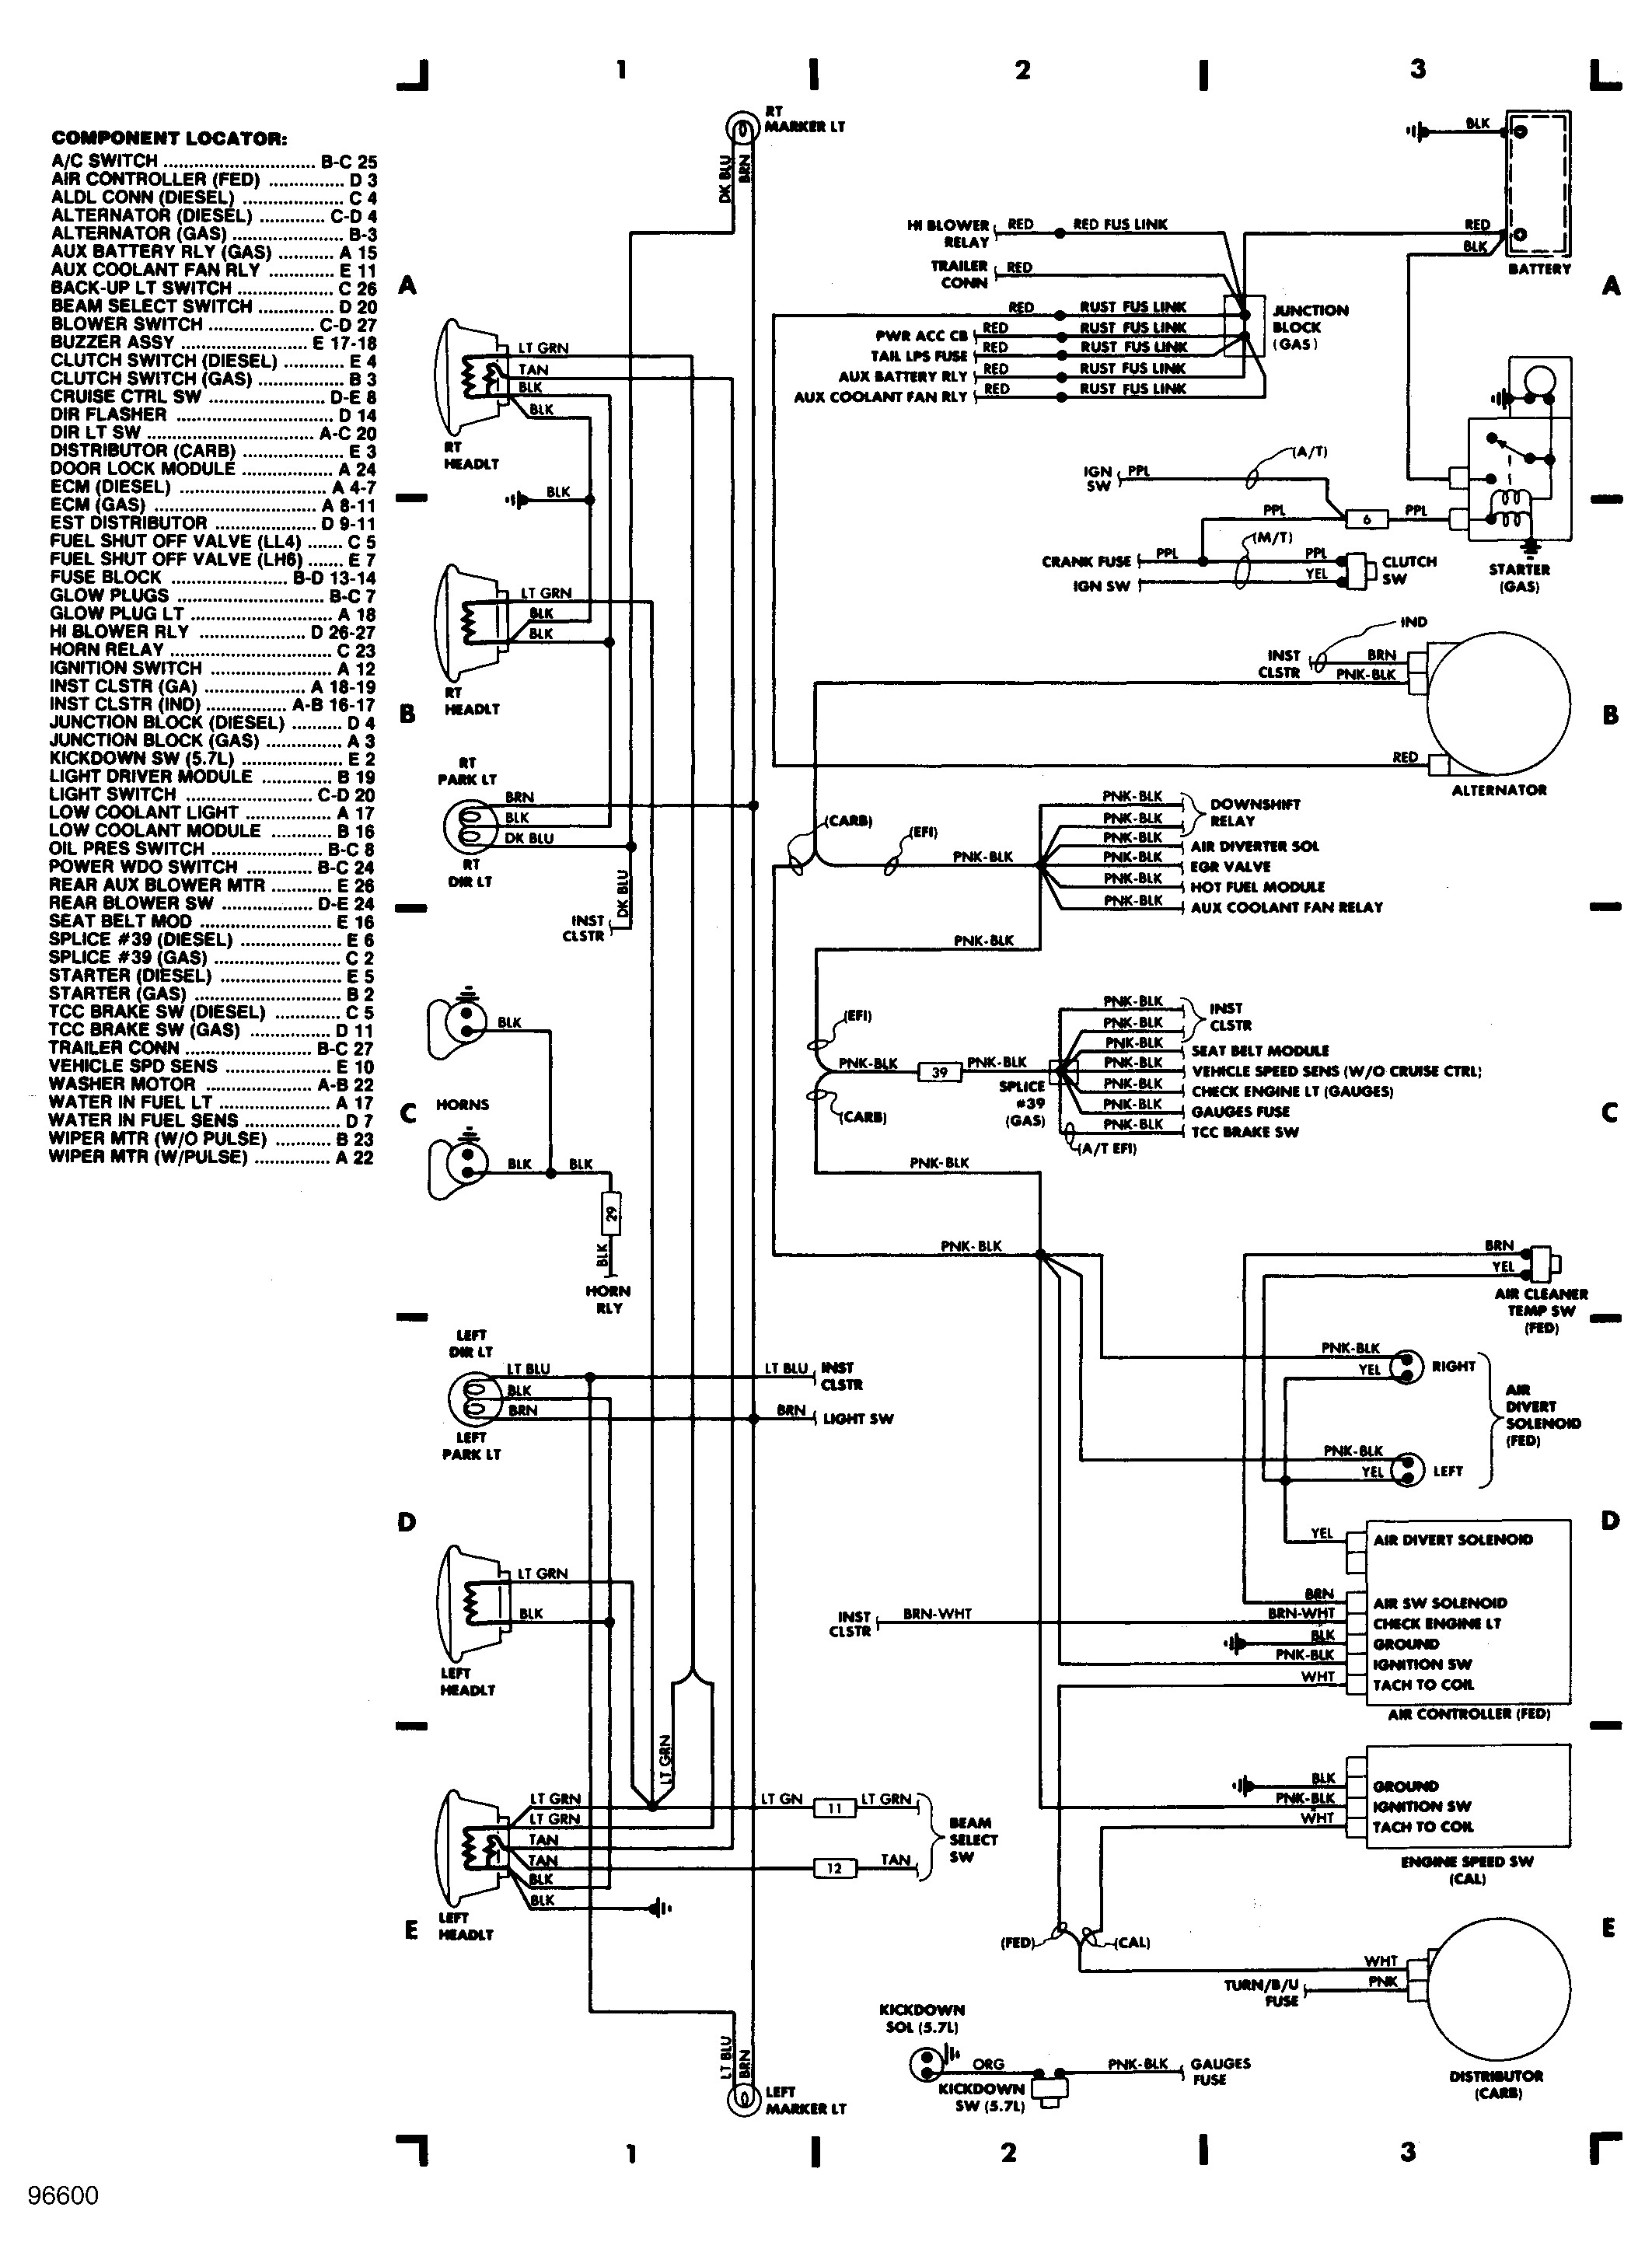 1996 Gas Ezgo Wire Diagram 0d22f 1996 P30 Wiring Diagram Of 1996 Gas Ezgo Wire Diagram